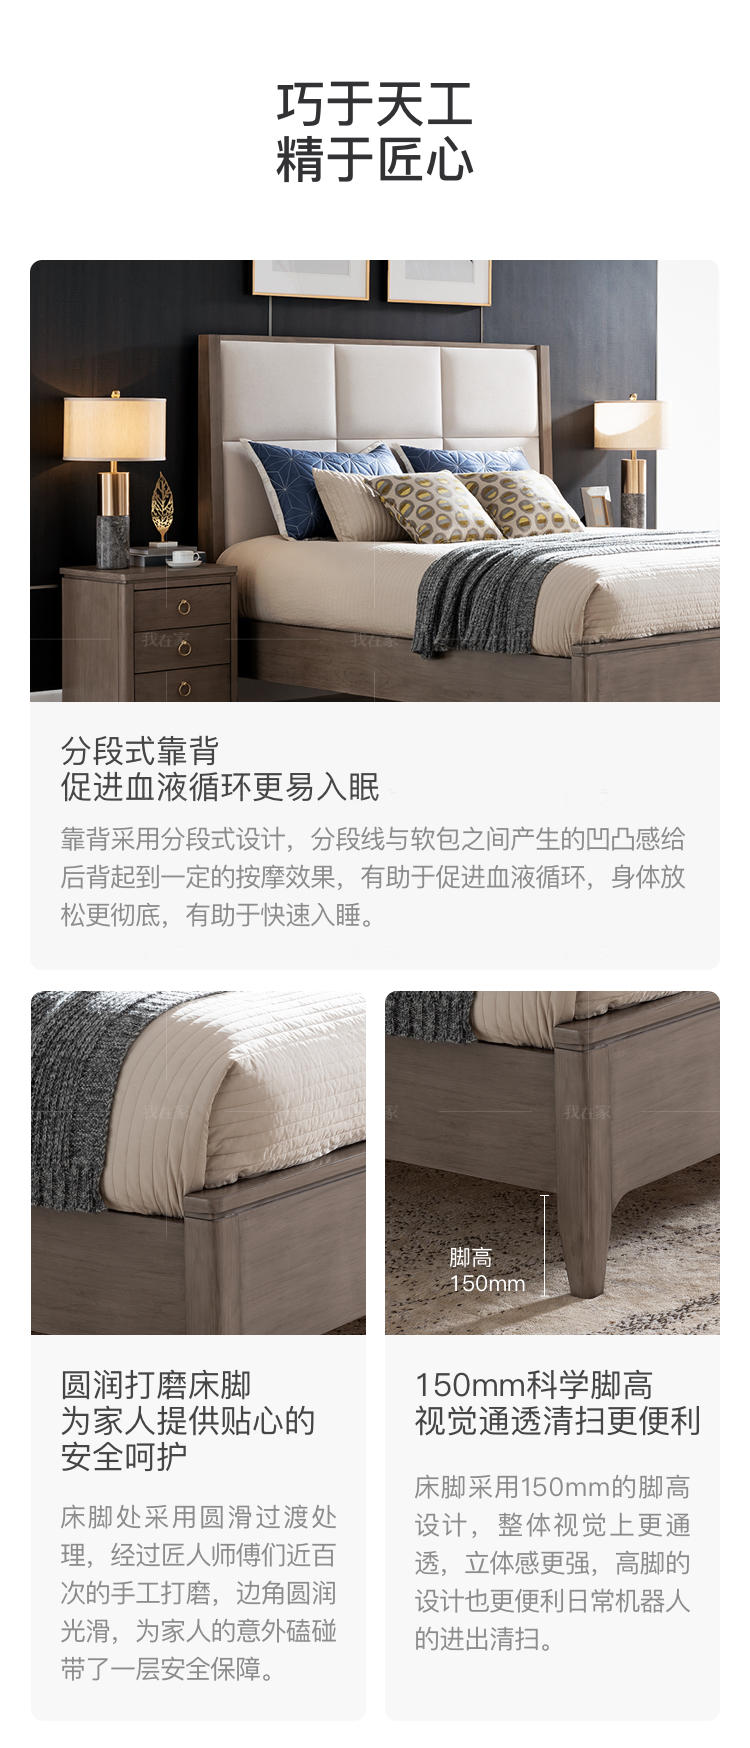 现代美式风格休斯顿双人床的家具详细介绍